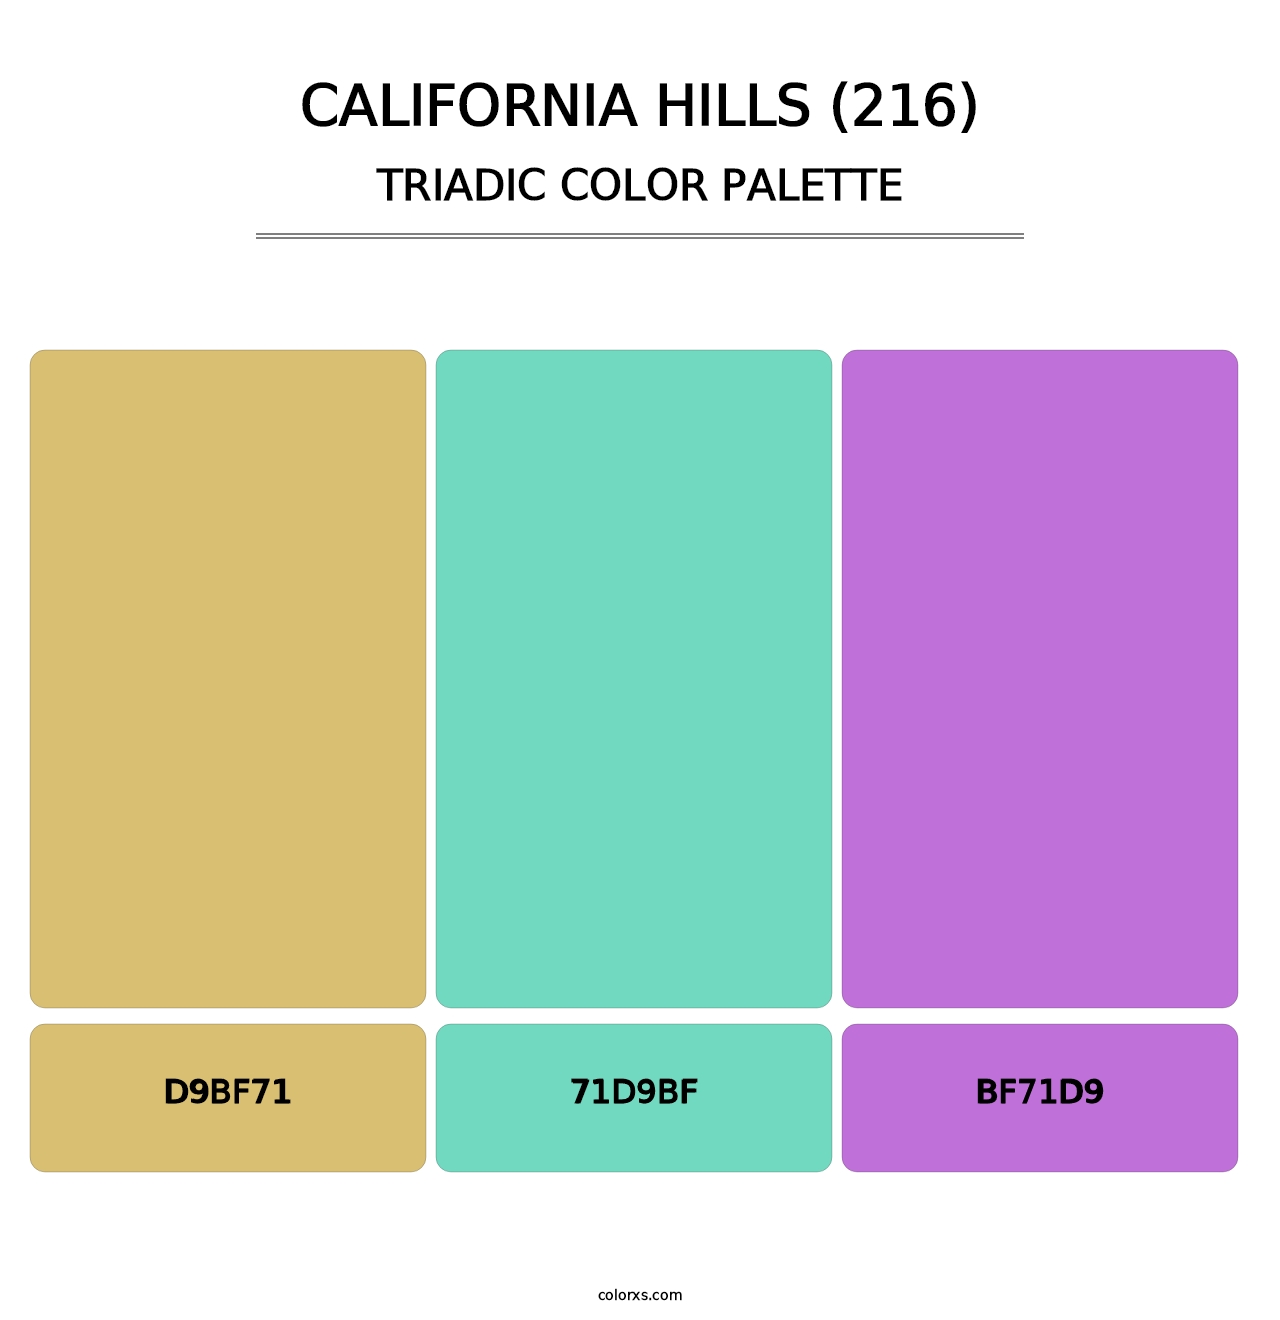 California Hills (216) - Triadic Color Palette